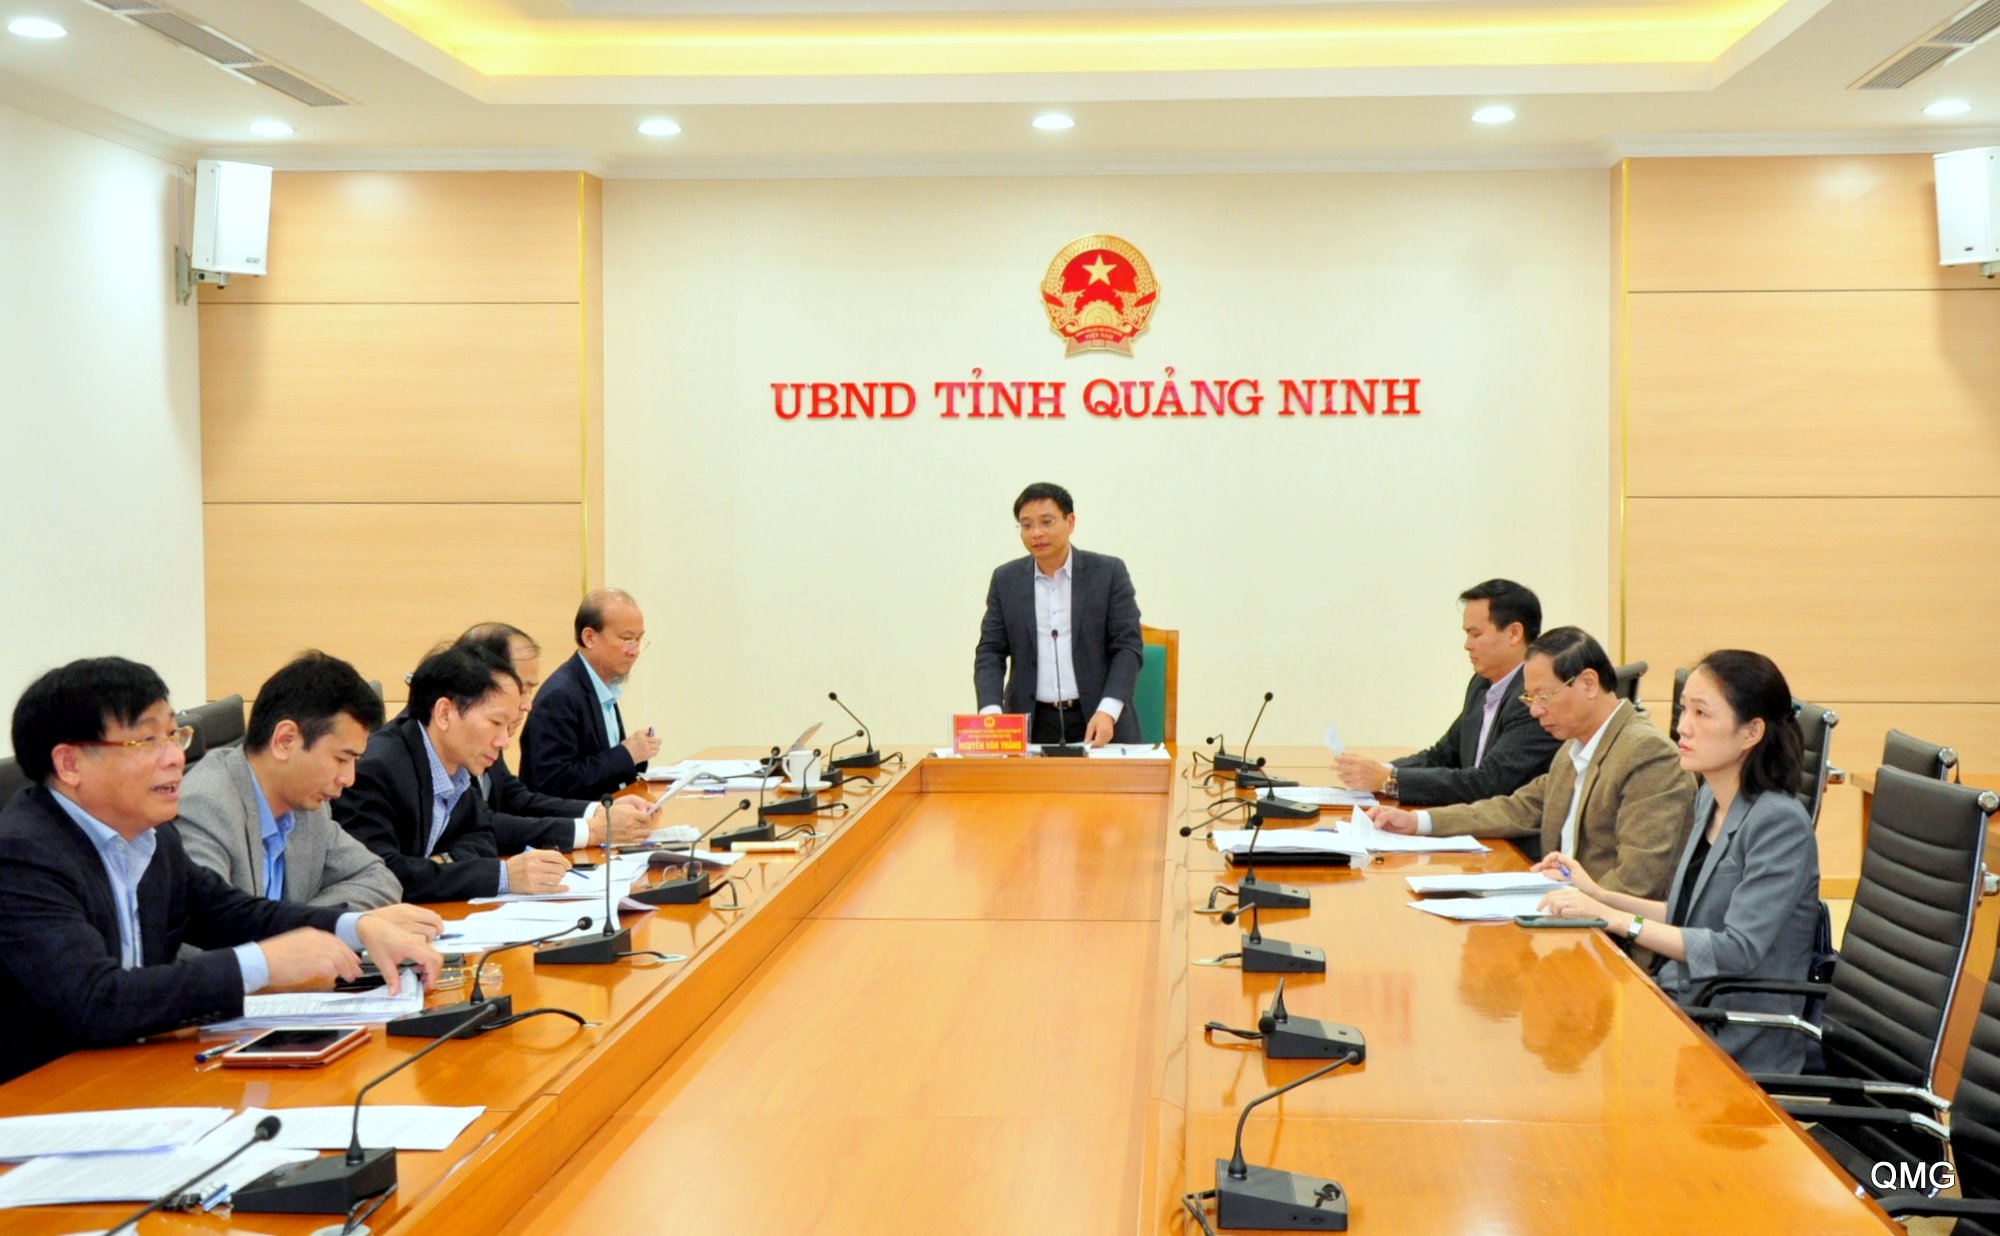 Chủ tịch UBND tỉnh Nguyễn Văn Thắng chủ trì cuộc họp nghe và cho ý kiến về chủ trương đầu tư một số dự án trên địa bàn tỉnh.